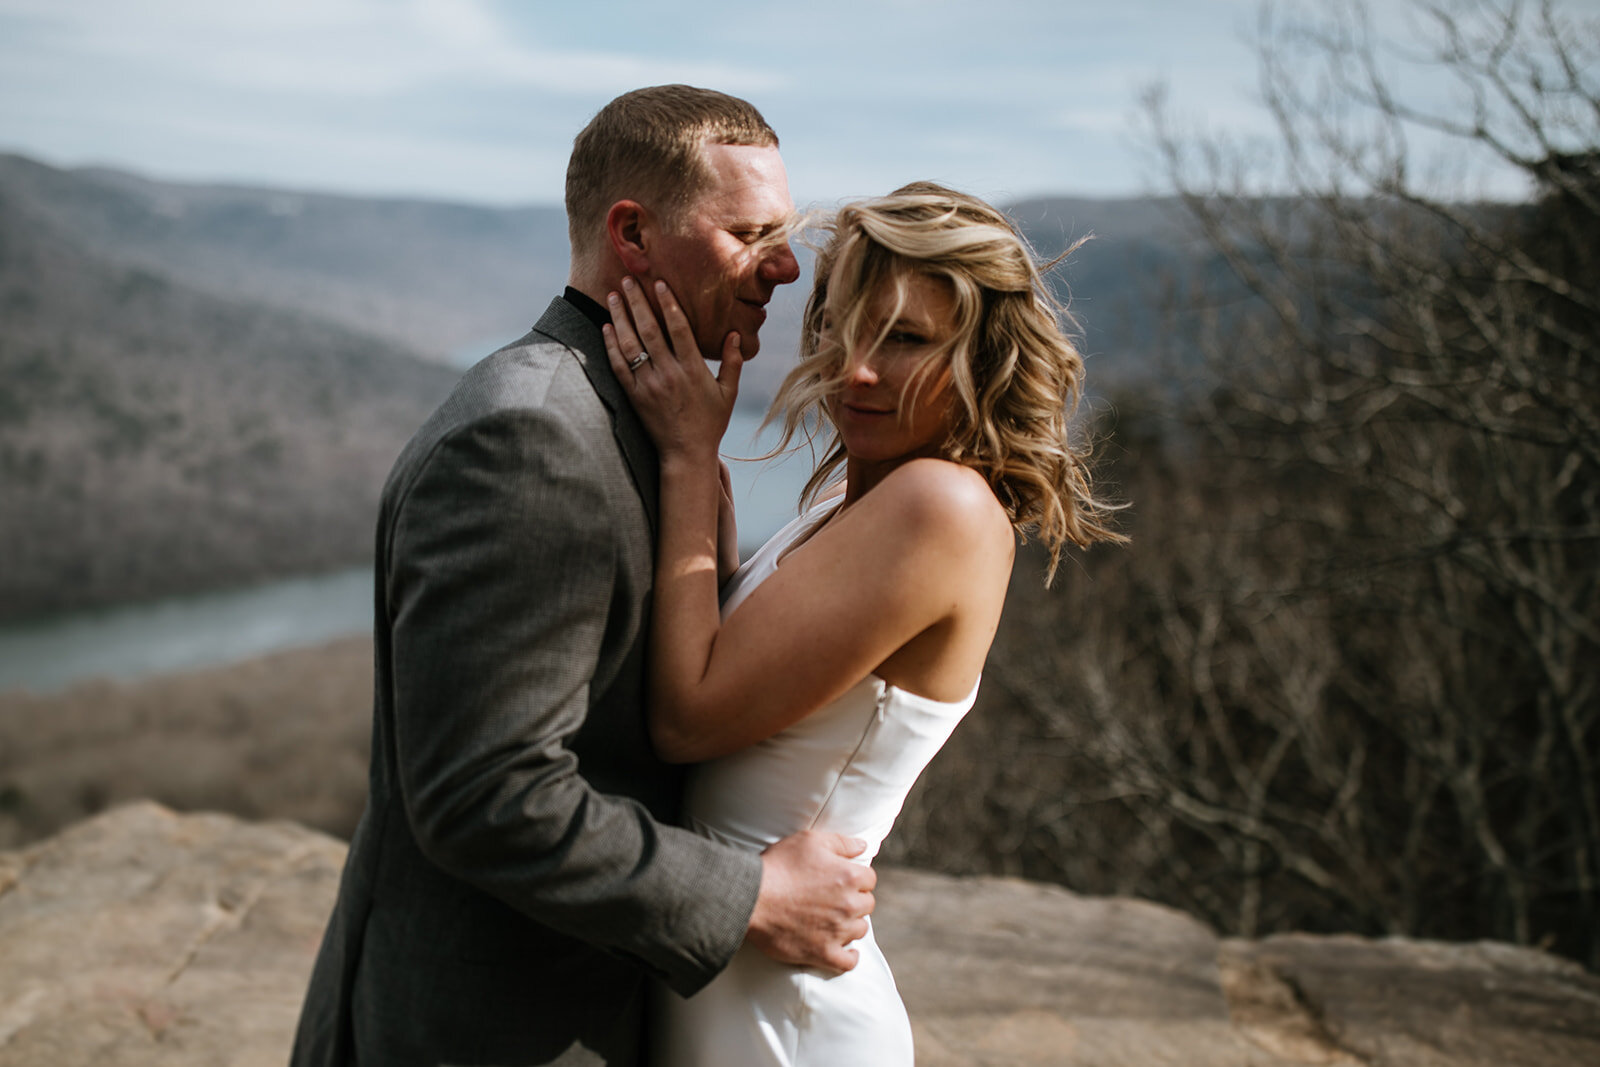 snoopers-rock-adventure-elopement-chattanooga-wedding-photographerfoster-falls-elopement-chattanooga-wedding-photographer-495_websize.jpg